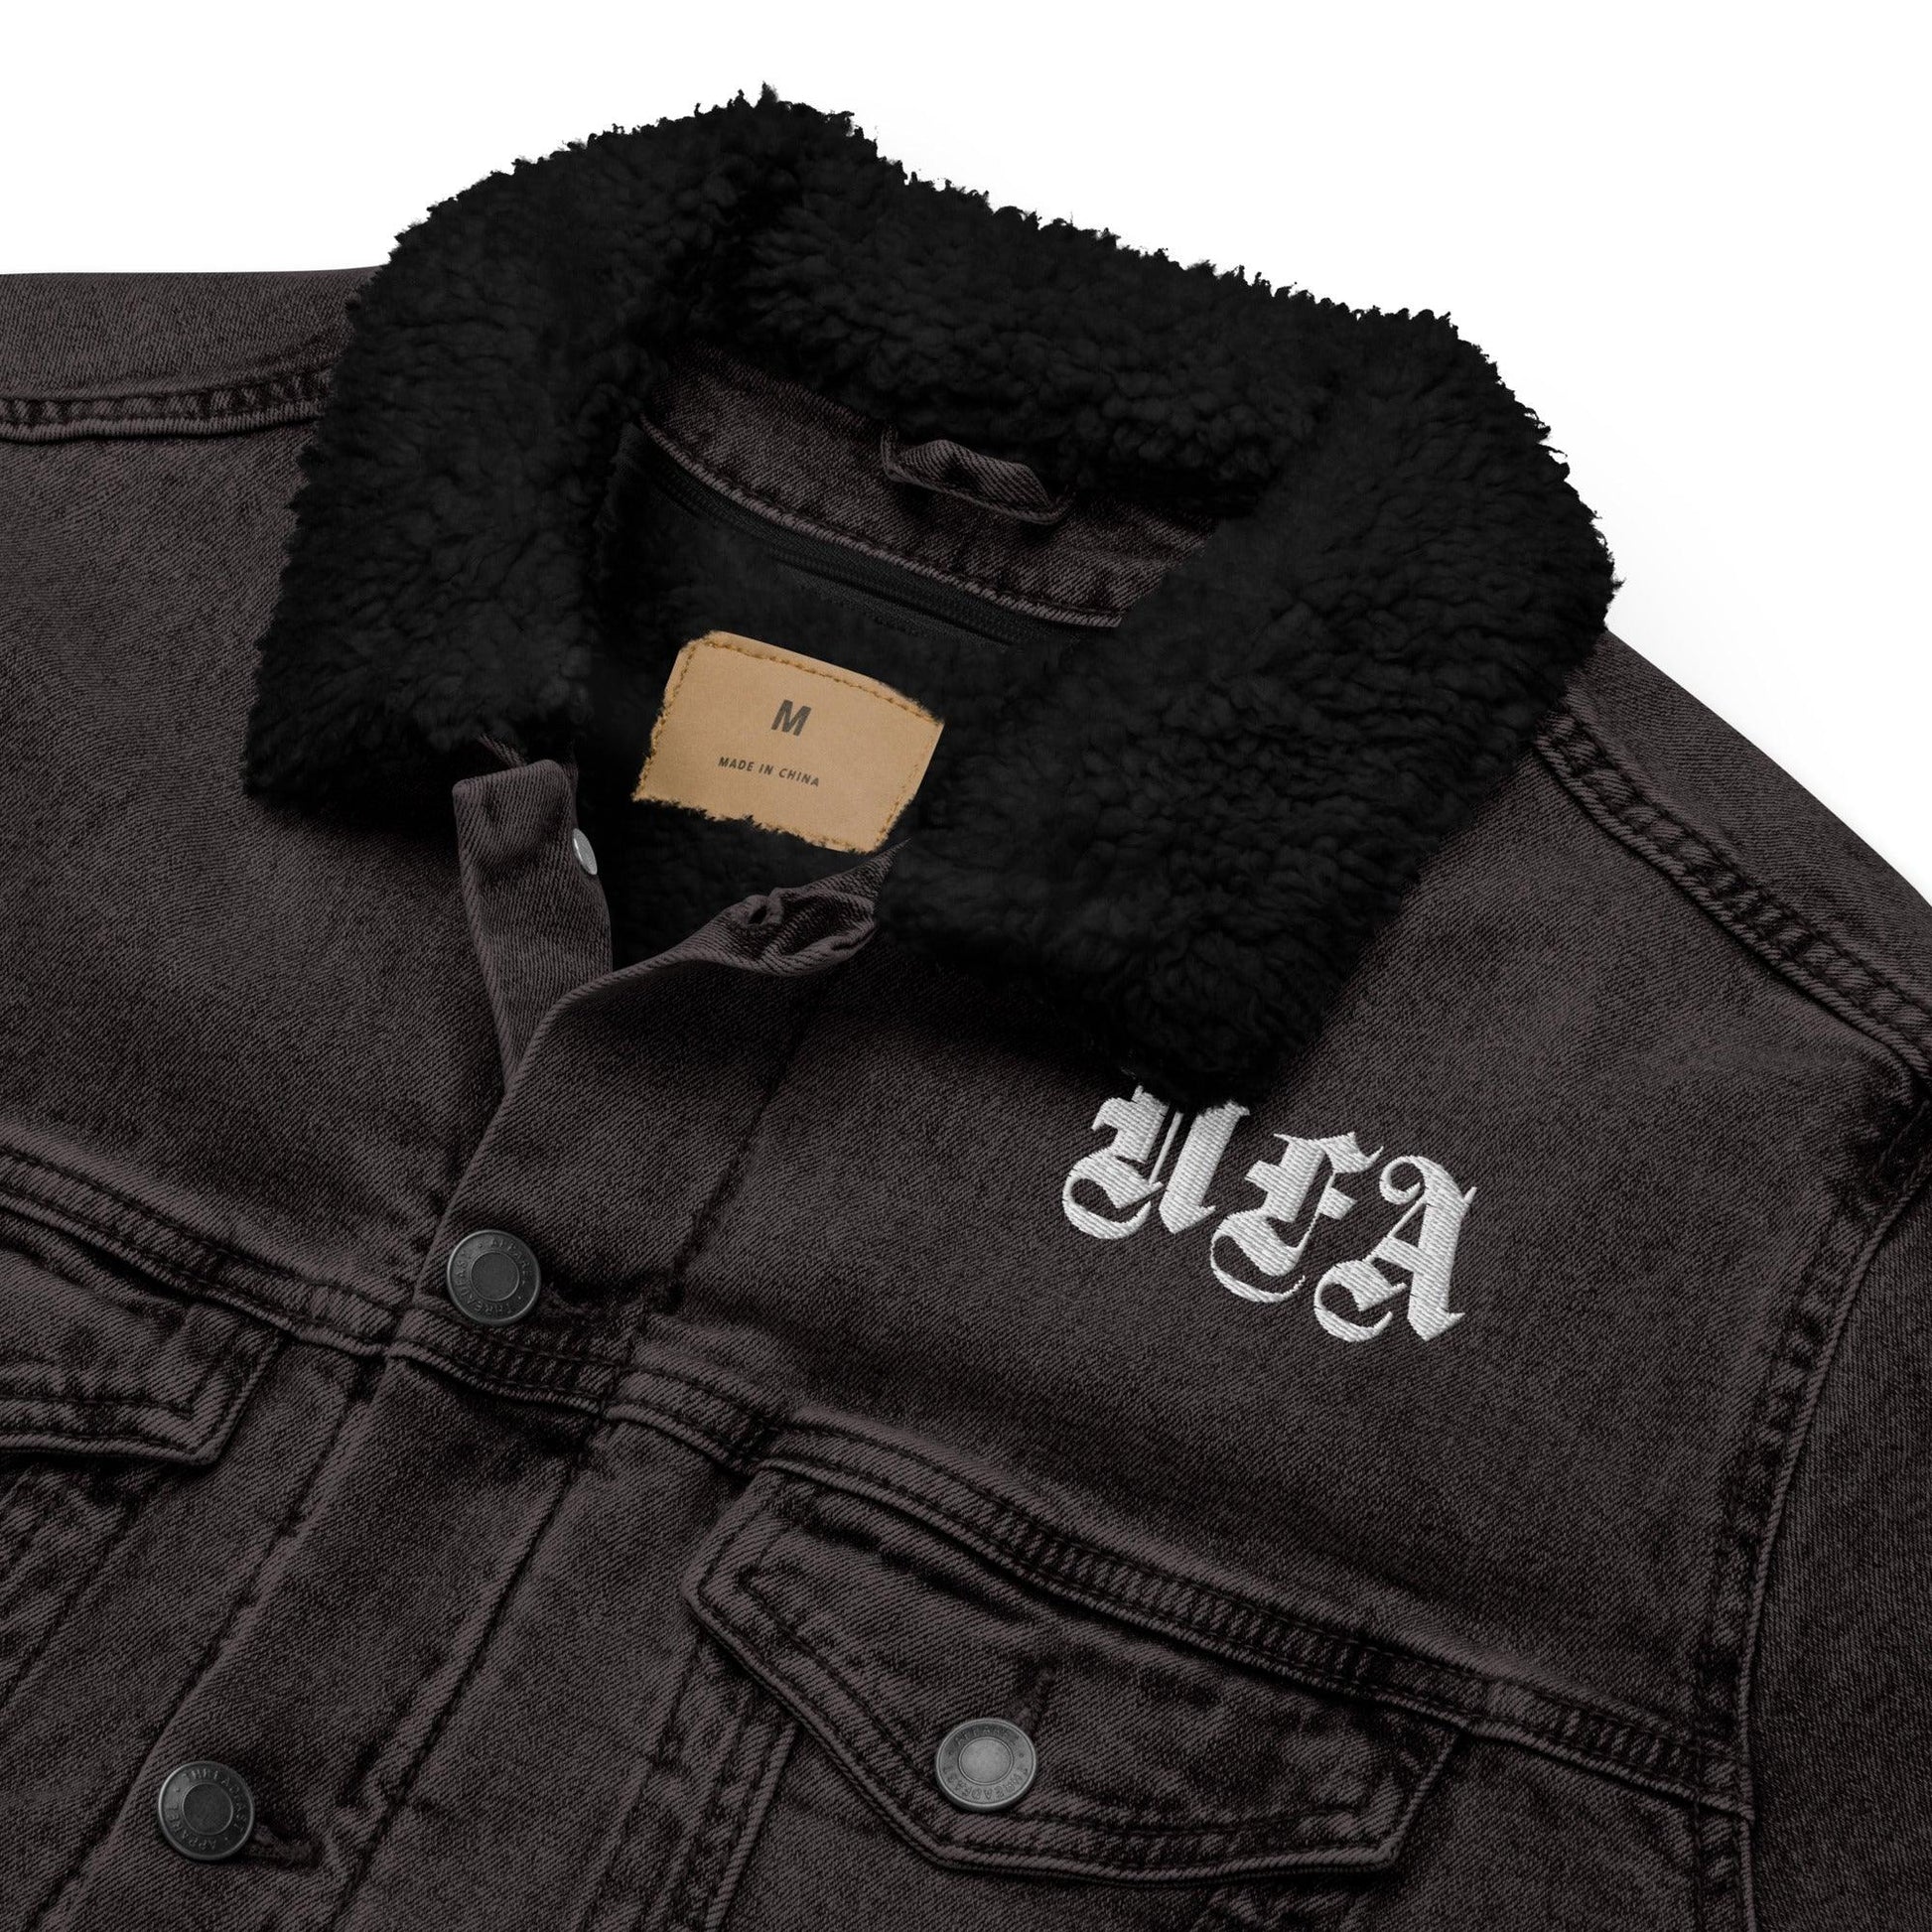 NFA Denim Sherpa Jacket - NO FIXED ABODE Punkrock Mens Luxury Streetwear UK